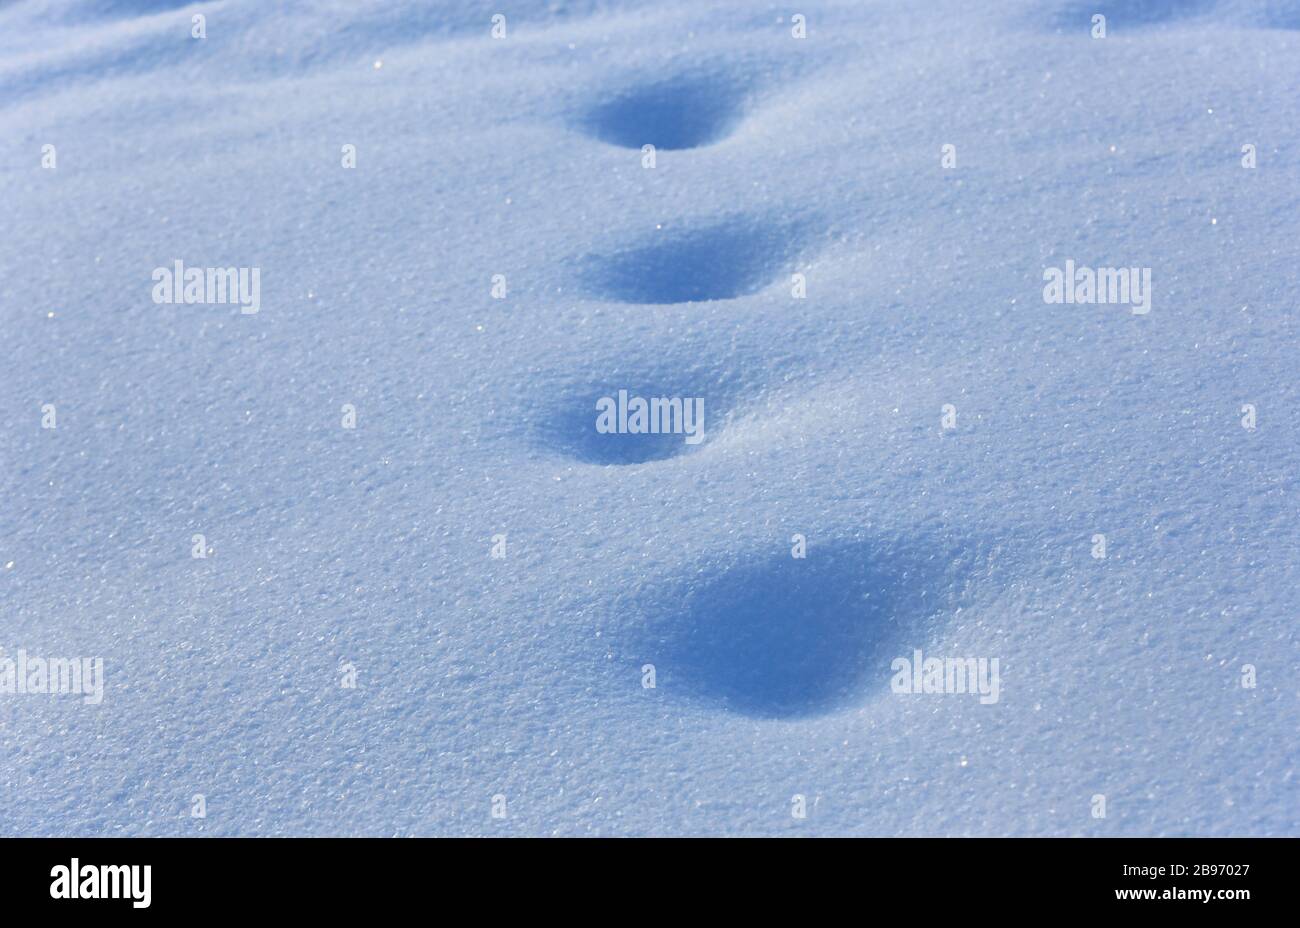 Fußabdrücke auf blauer Schneeoberfläche - abstrakter Hintergrund Stockfoto